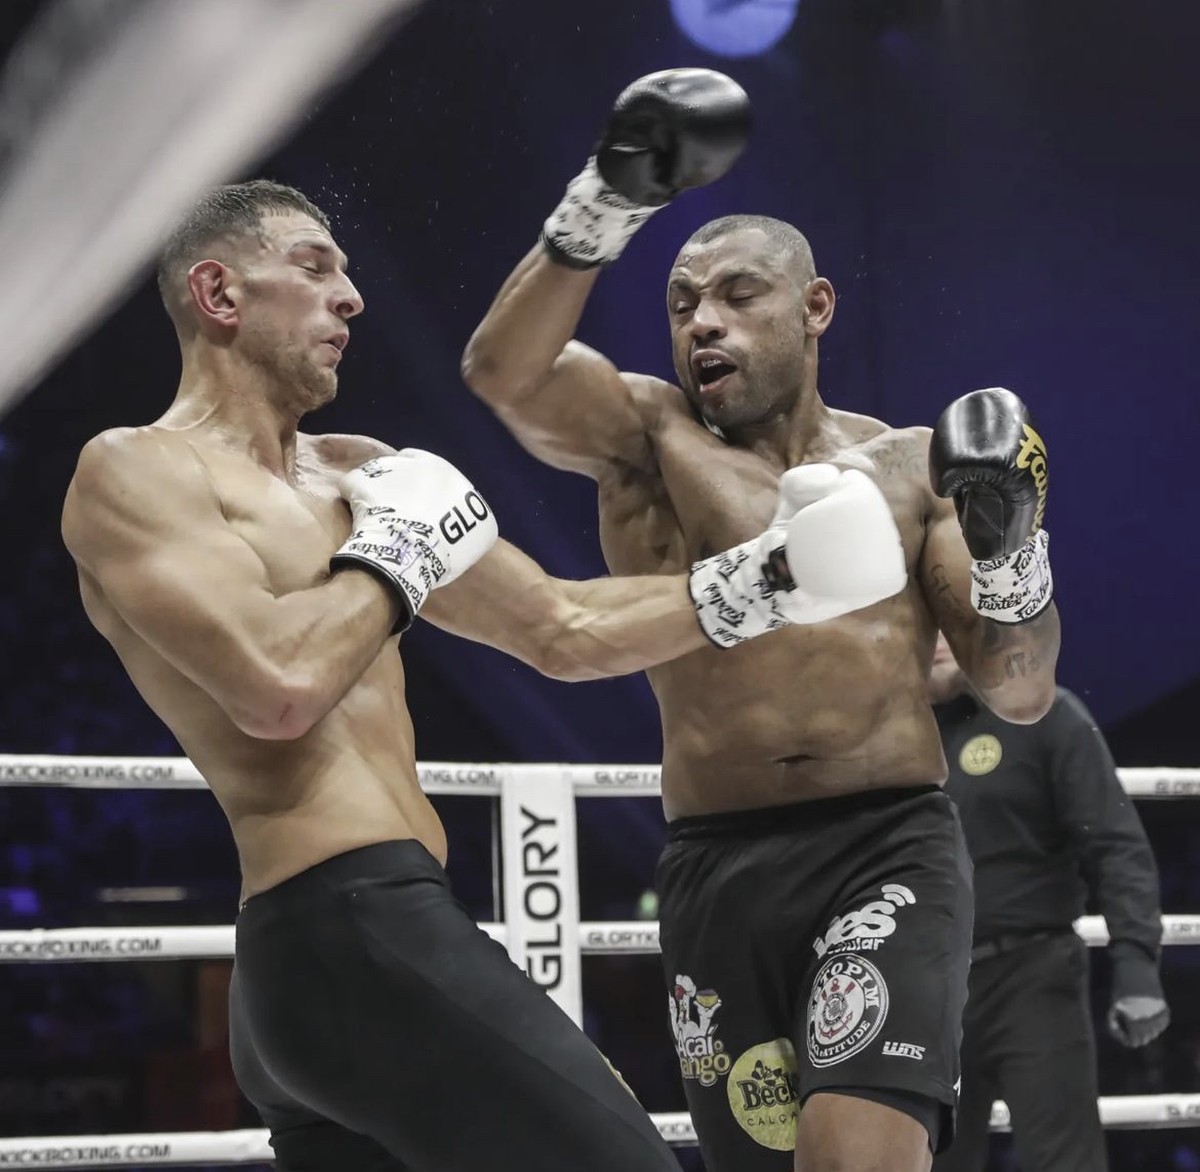 César Almeida falha na balança e perde chance de repetir feito de Poatan no  Glory - Ag. Fight – MMA, UFC, Boxe e Mais